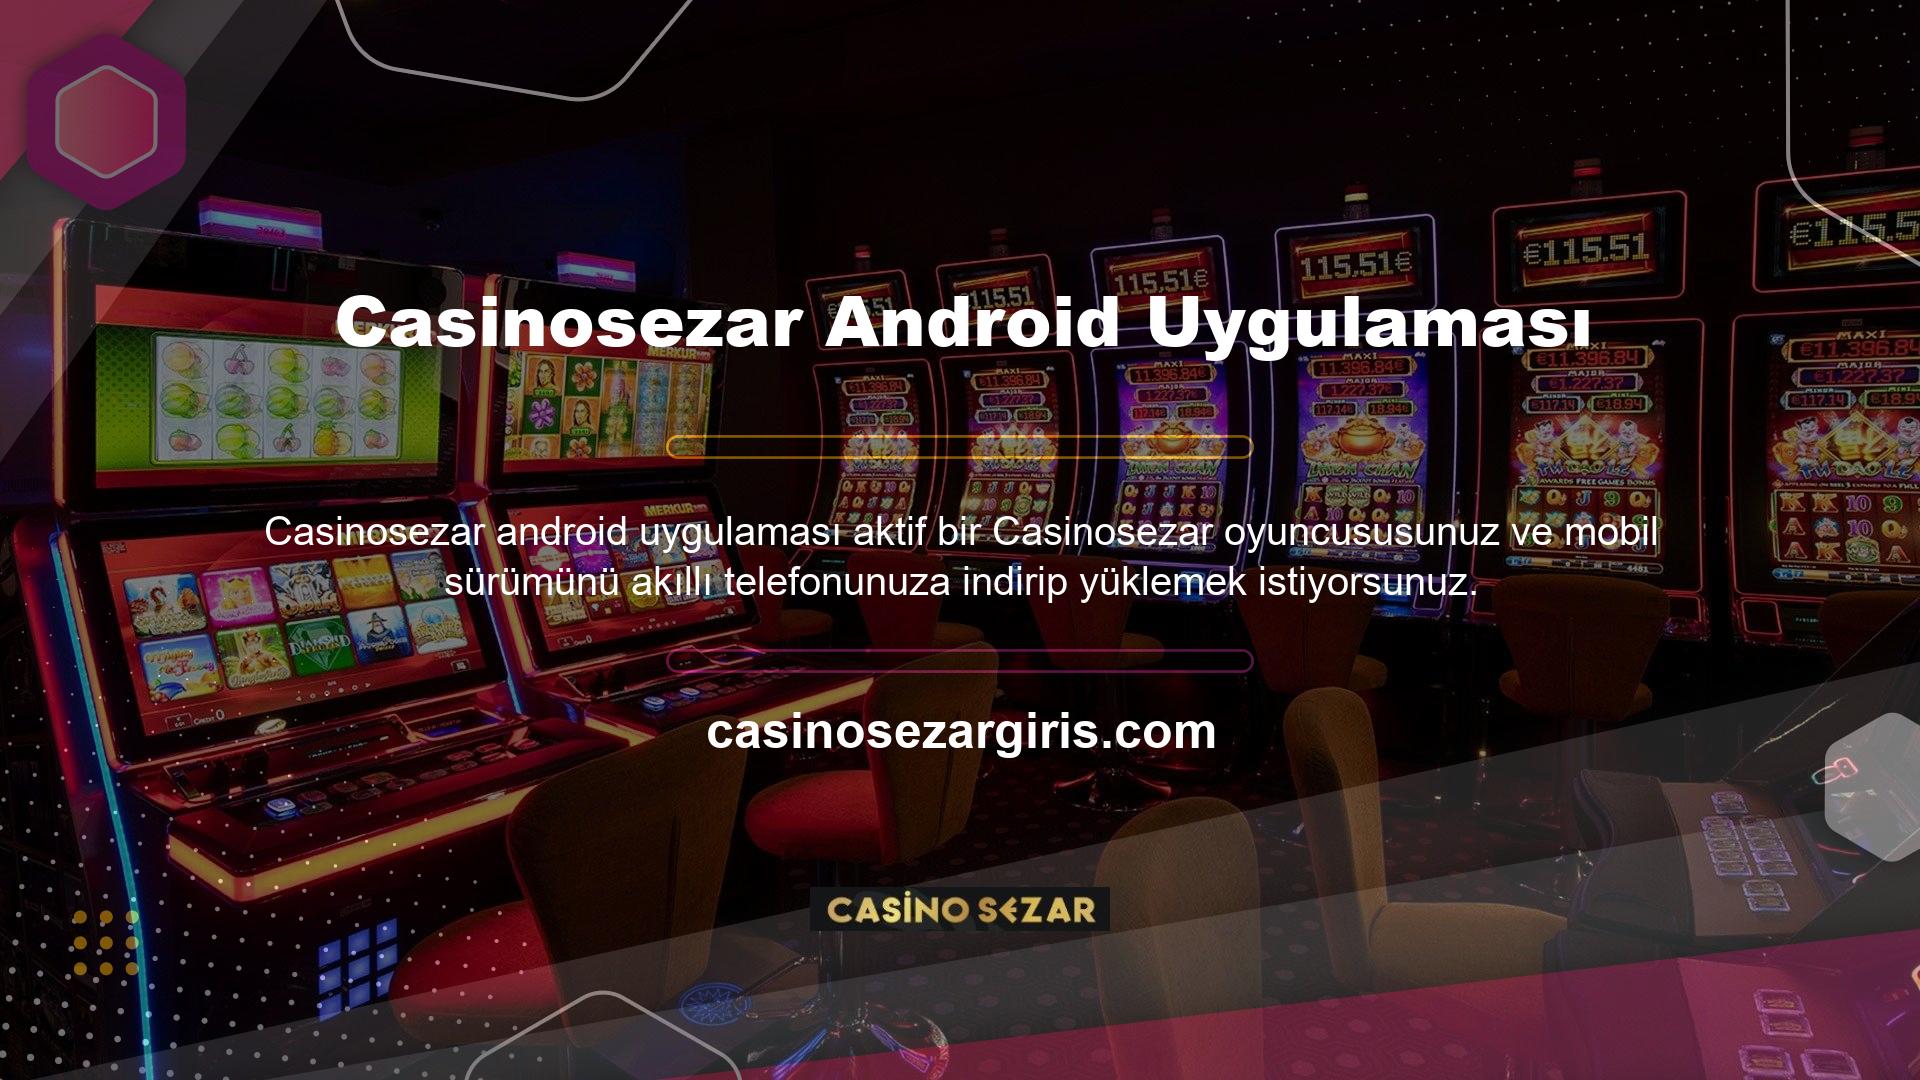 Lütfen Casinosezar APK'sının Google Play'den indirilemeyeceğini unutmayın